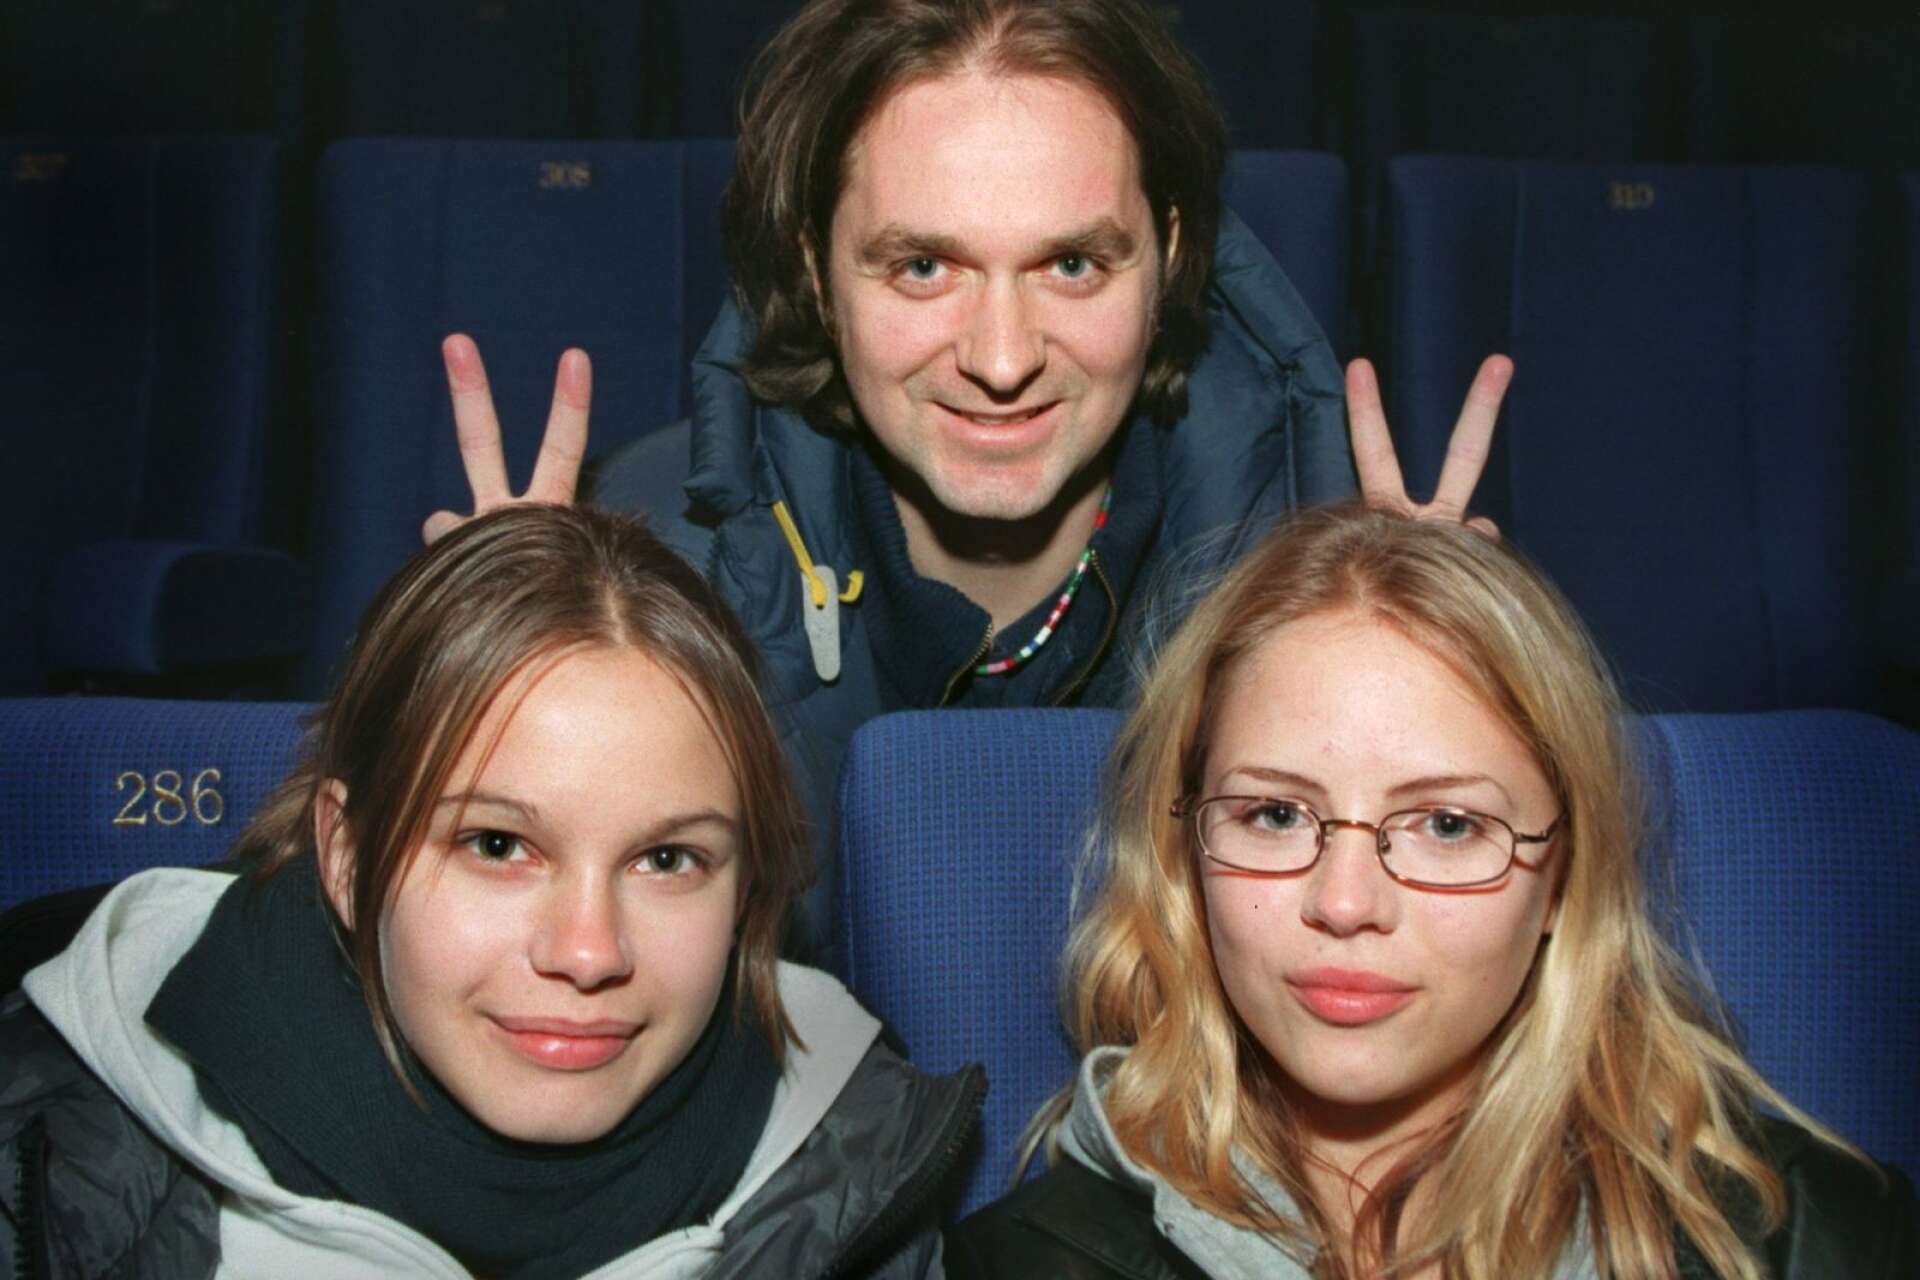 Lukas Moodysson slog igenom rejält i sin långfilmsdebut. Här tillsammans med skådespelarna Rebecca Liljeberg och Alexandra Dahlström.